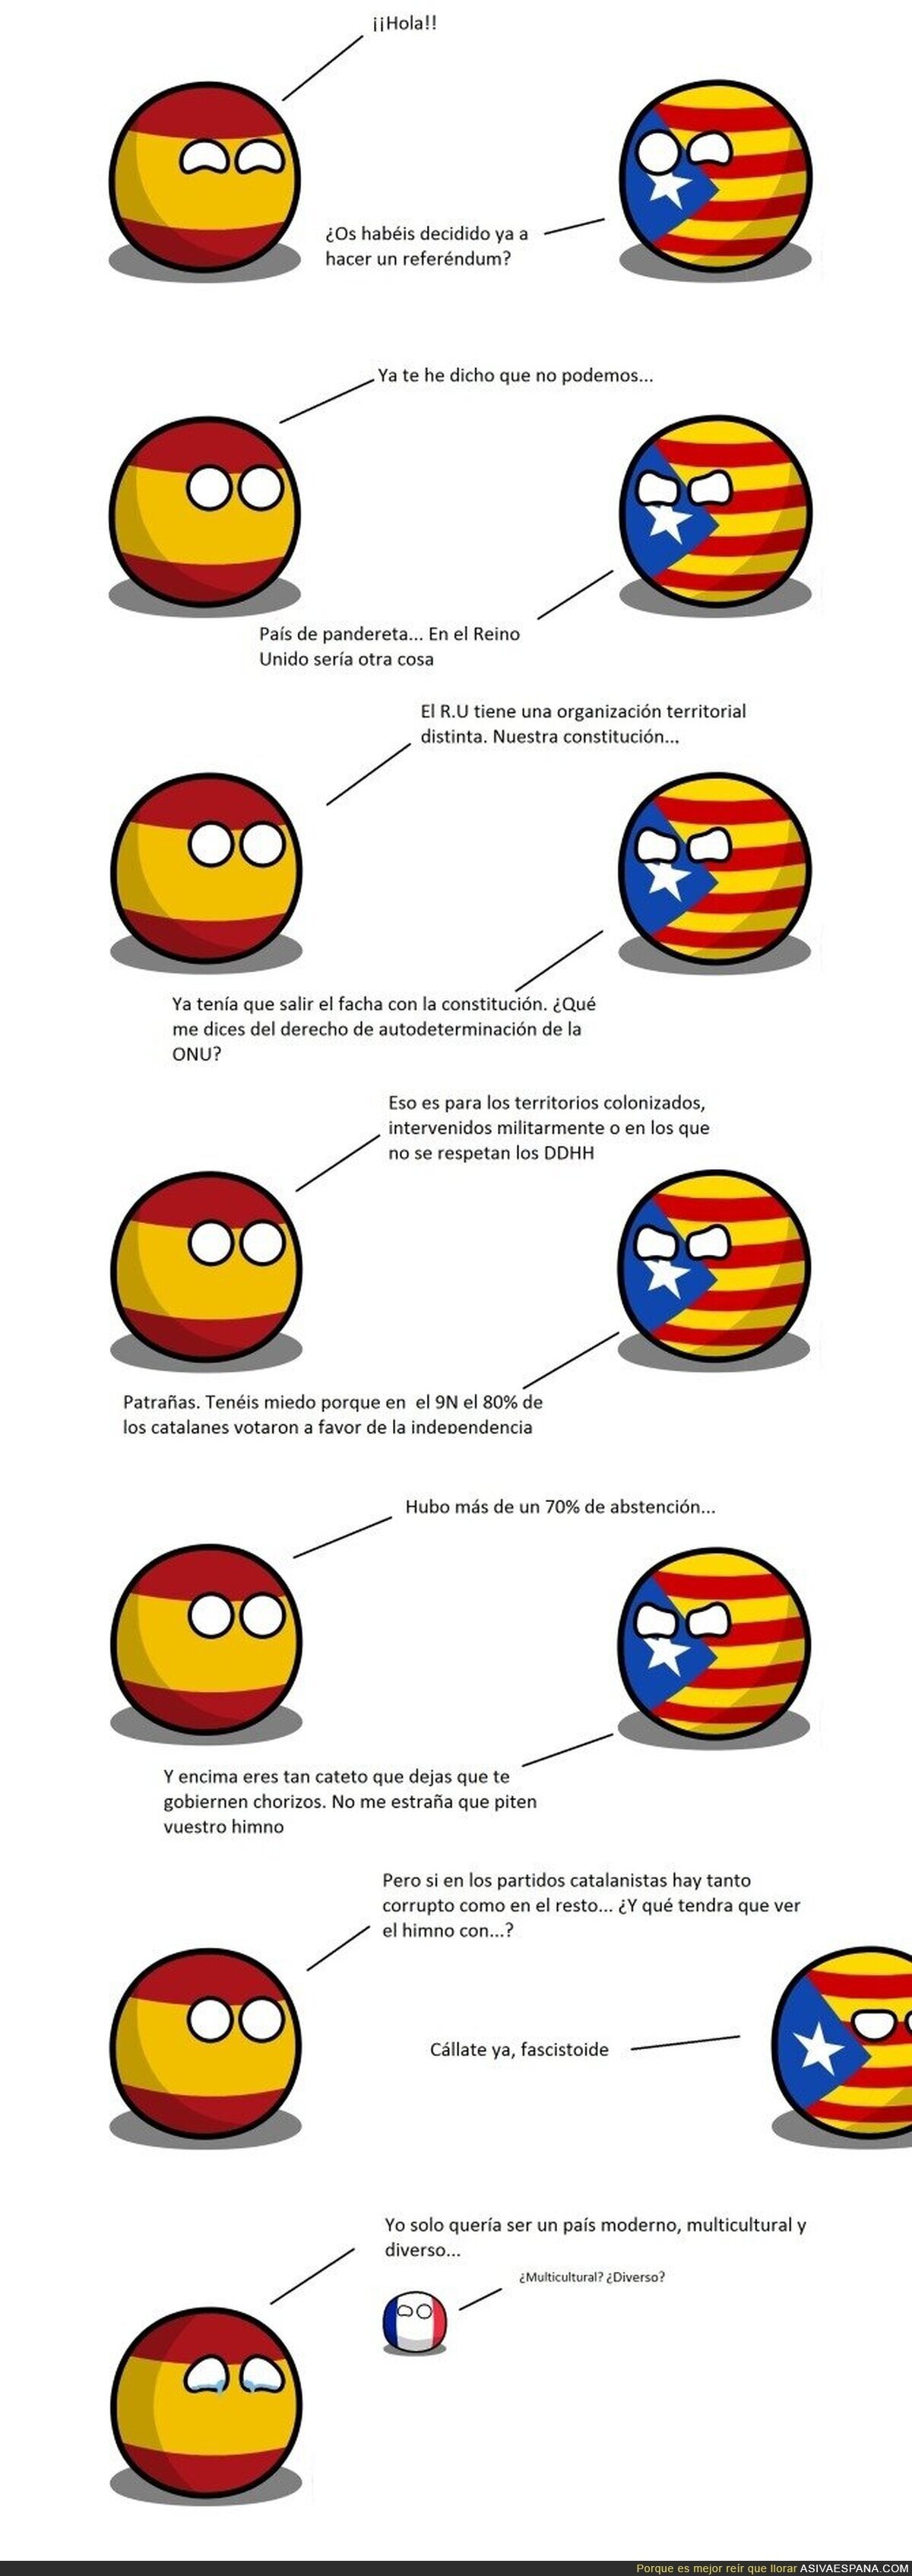 España y el gobierno catalán